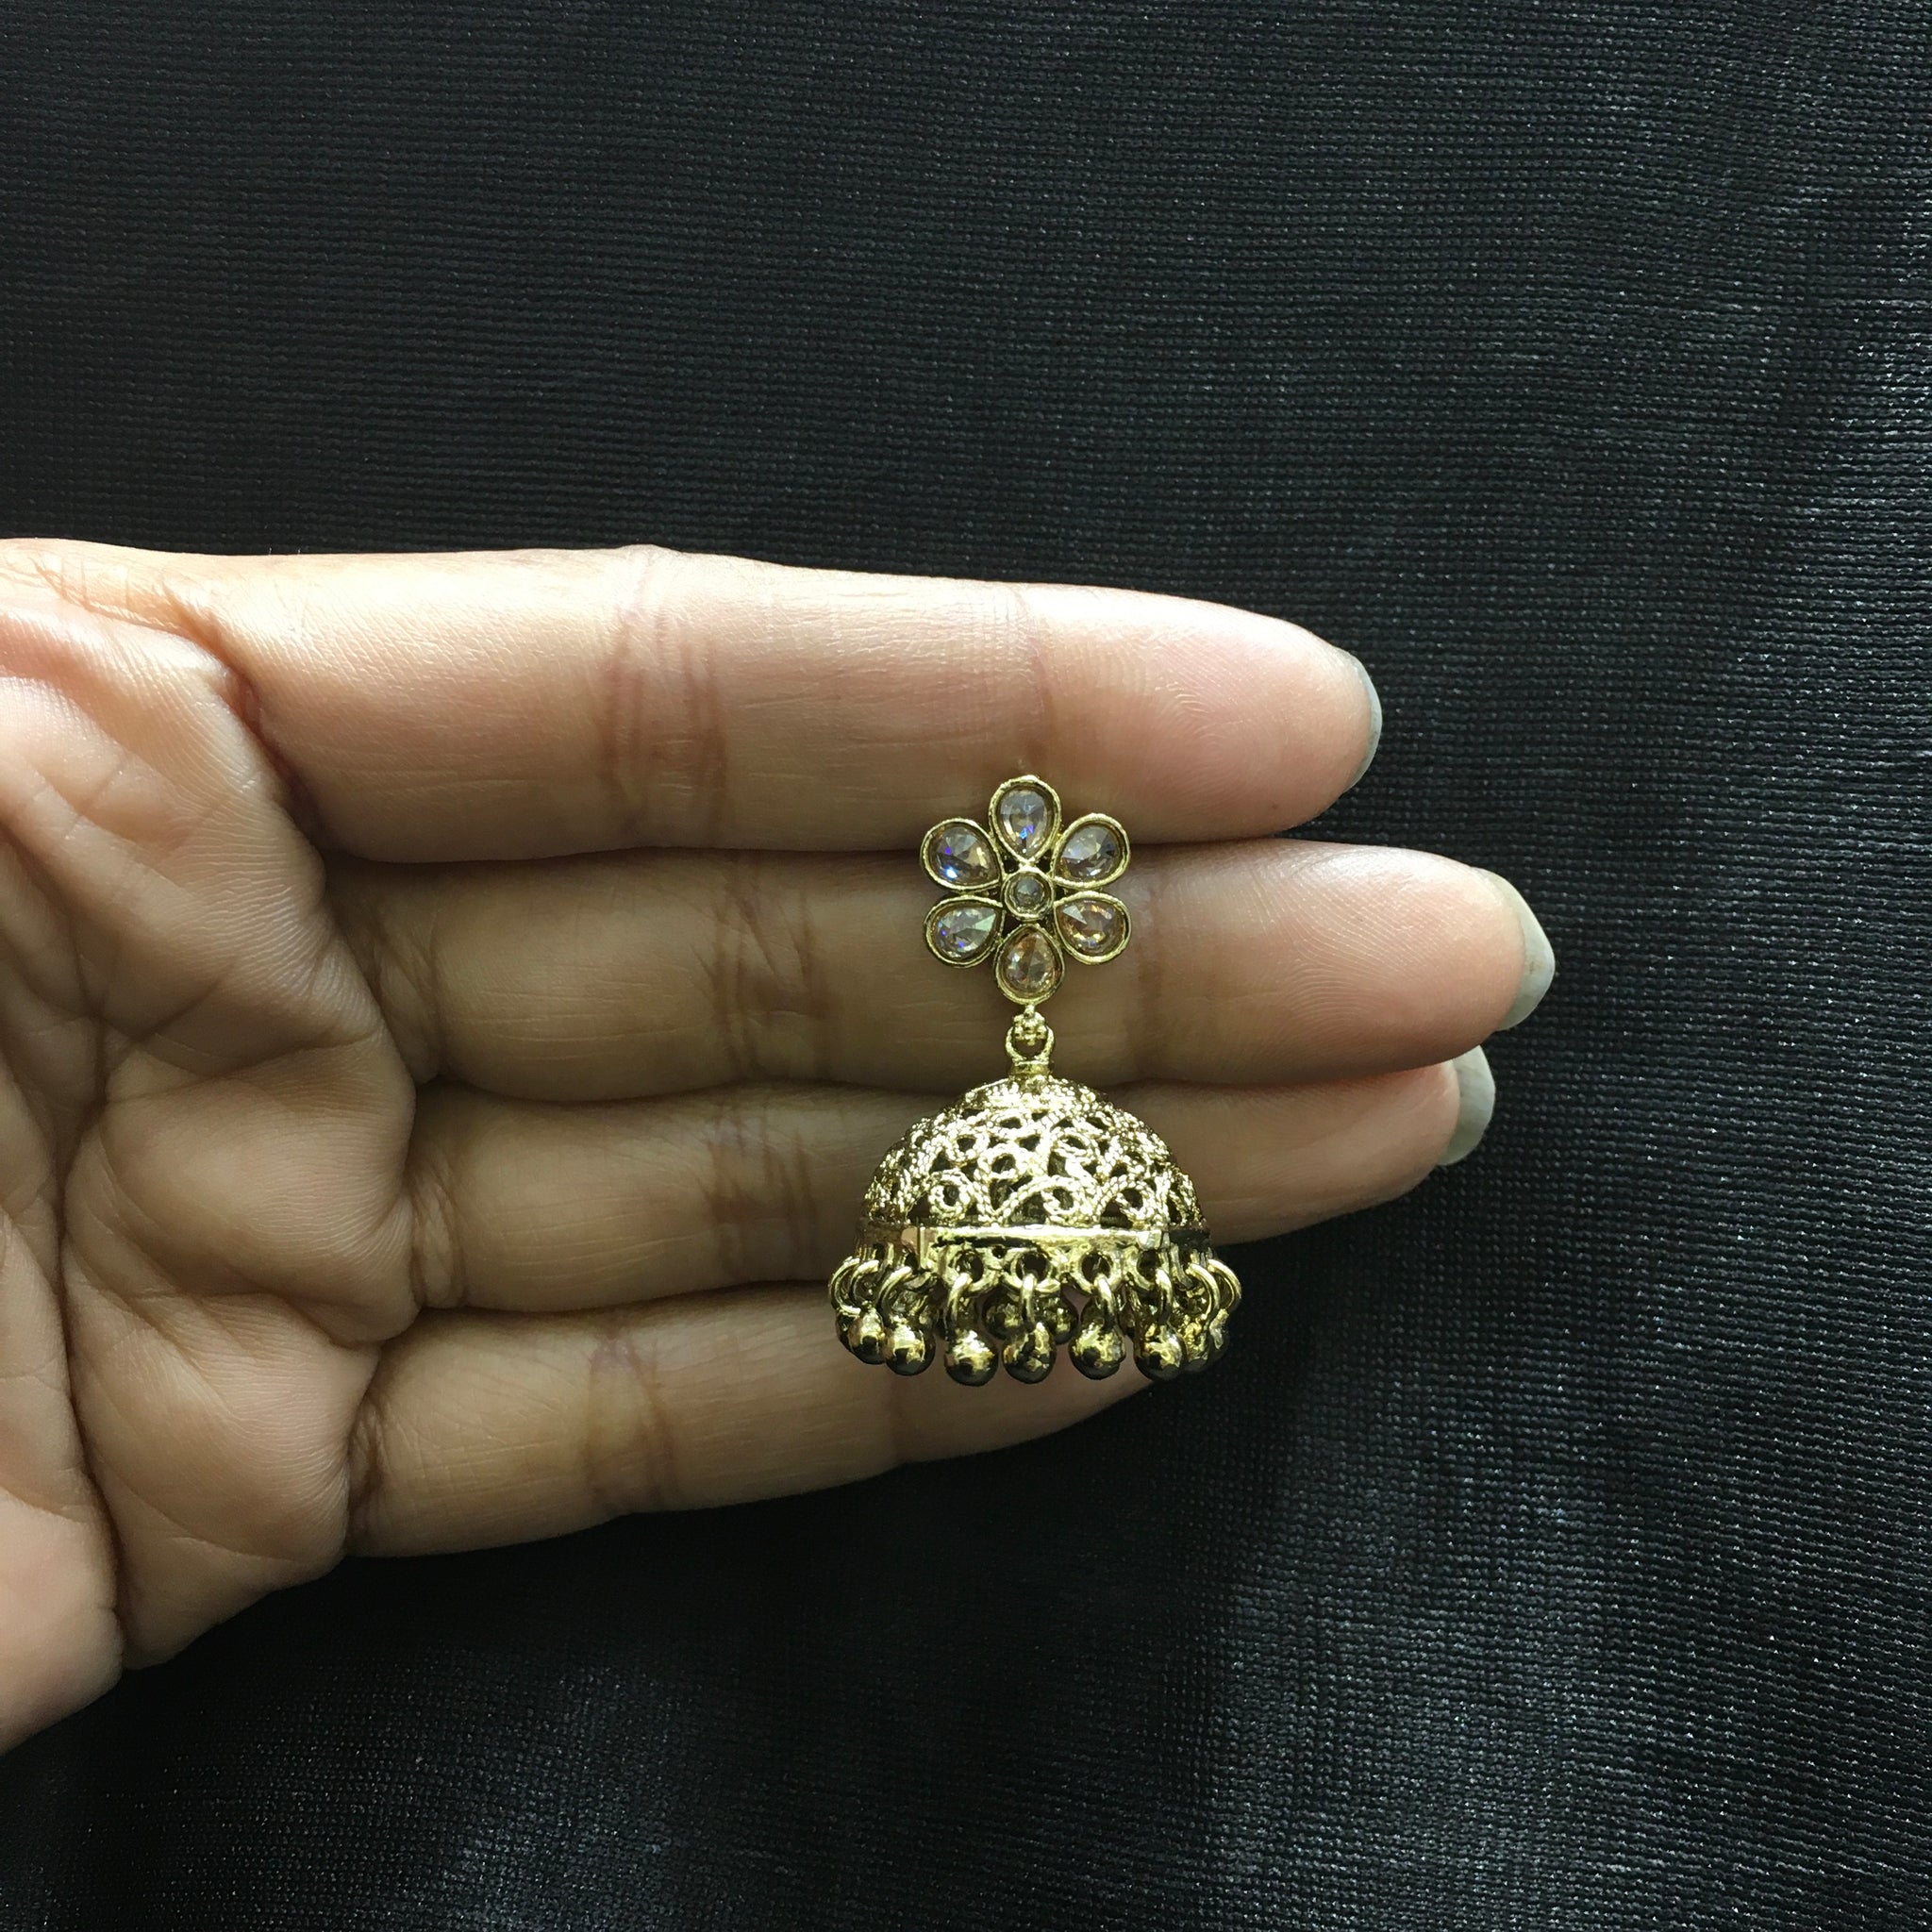 Jhumki Antique Earring 4770-33 - Dazzles Jewellery